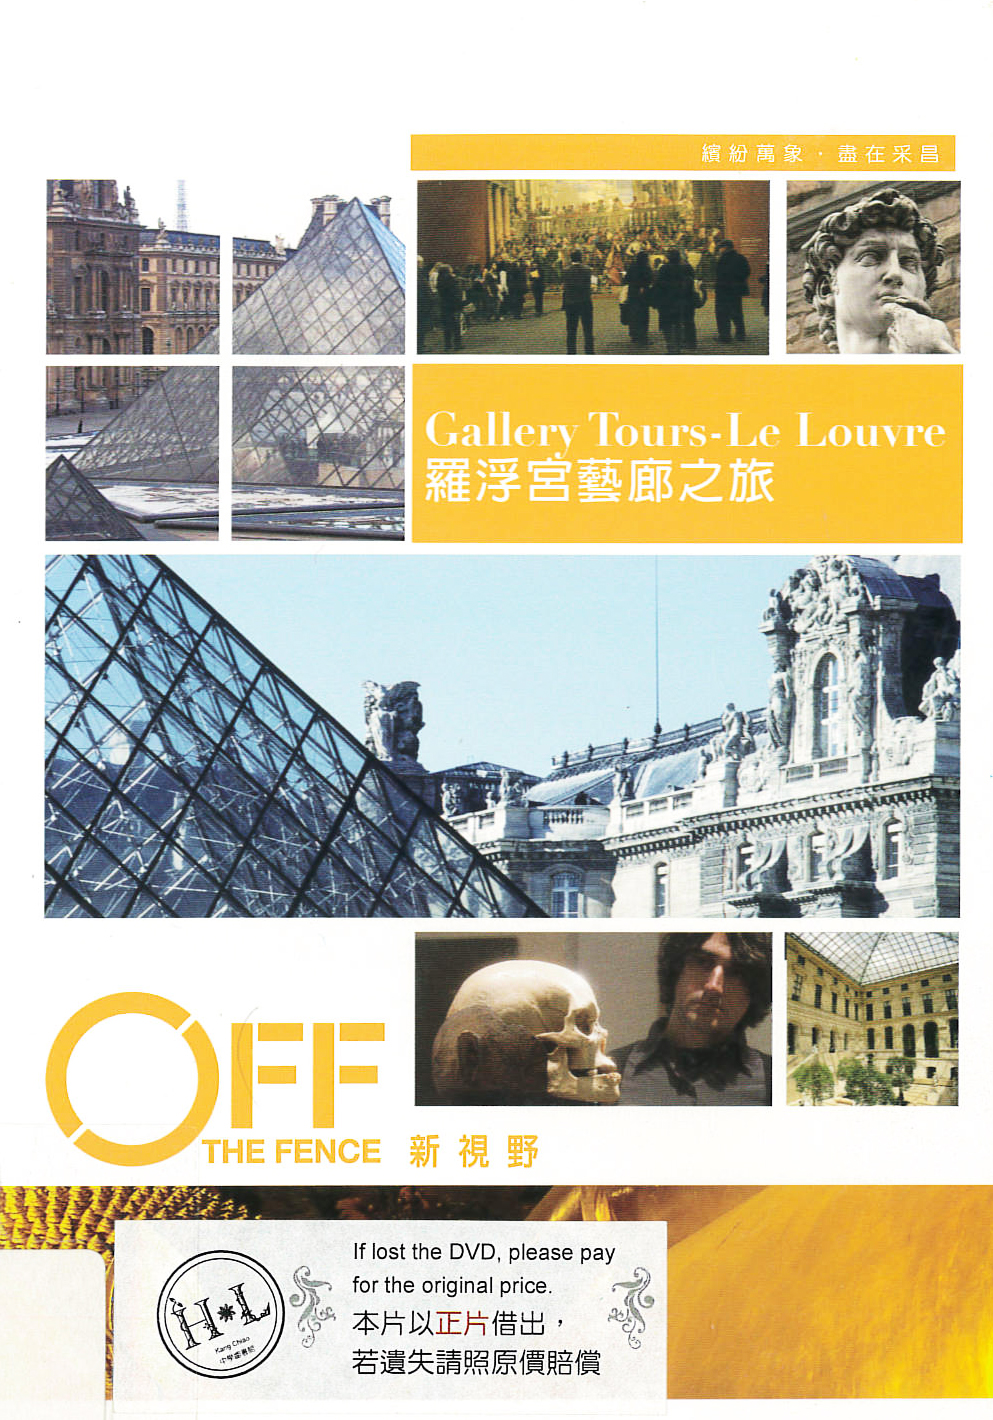 羅浮宮藝廊之旅 : Gallery Tours-Le Louvre